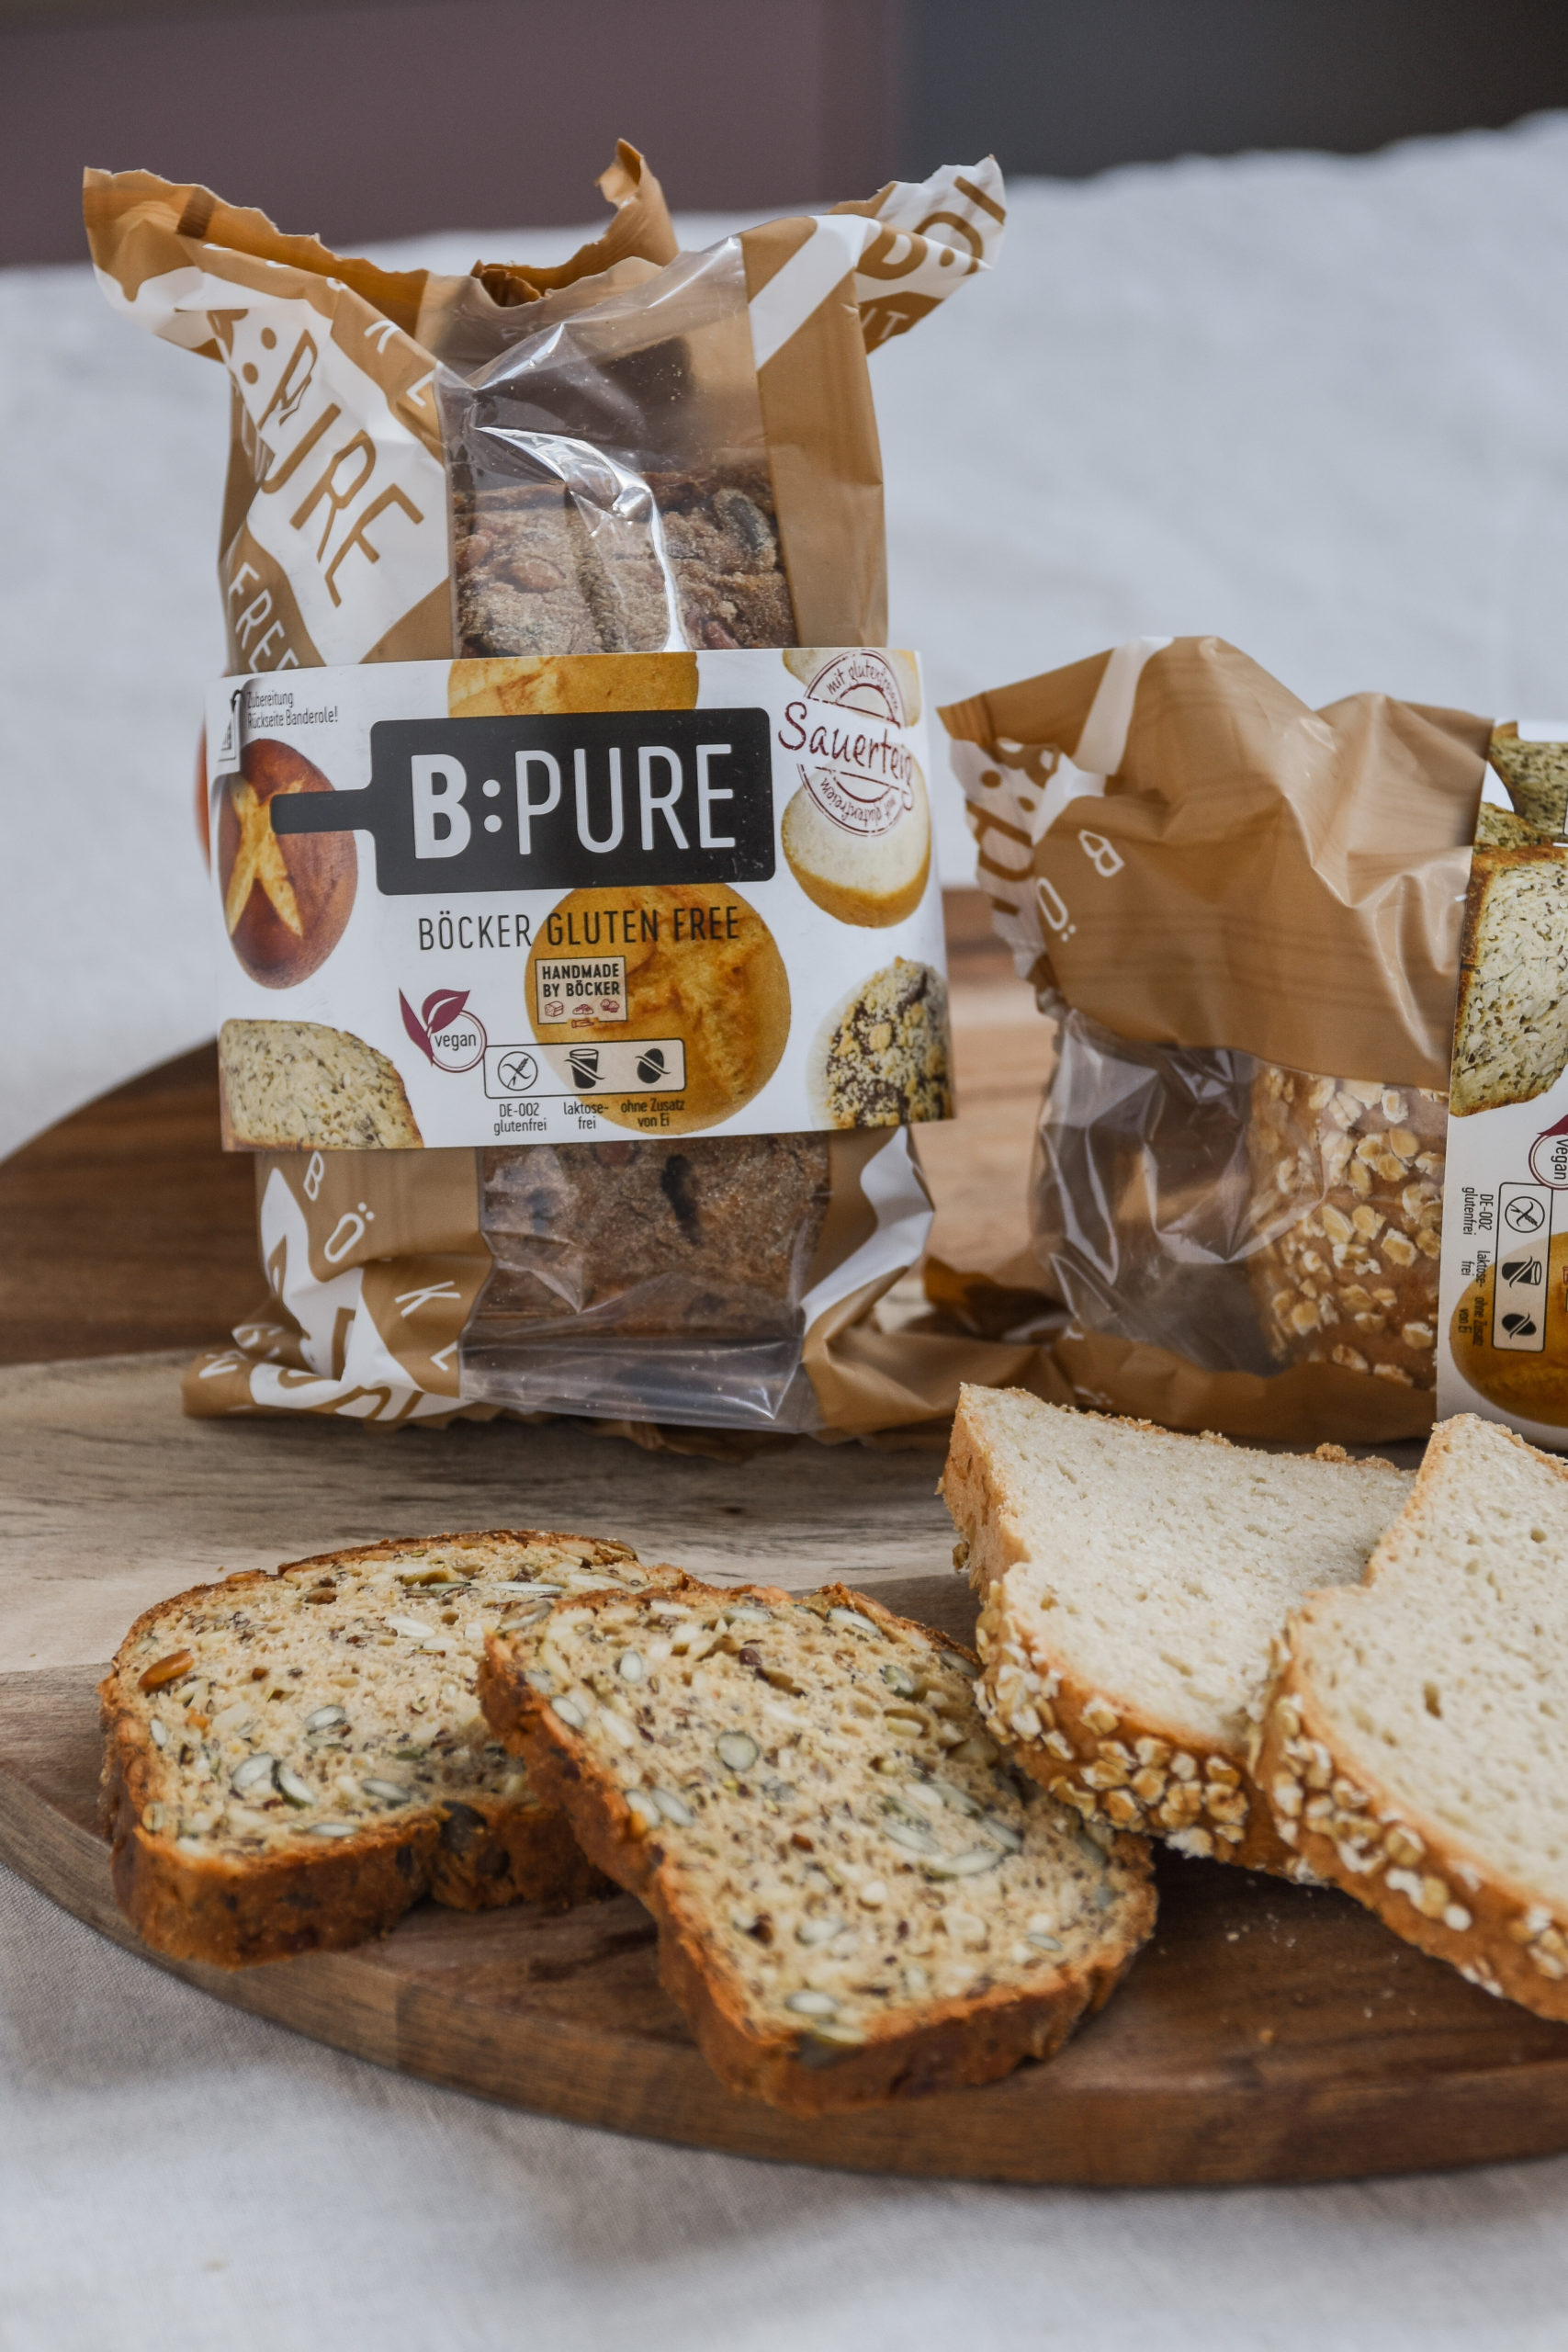 Glutenfreie Brote mit Sauerteig von Böcker B:PURE